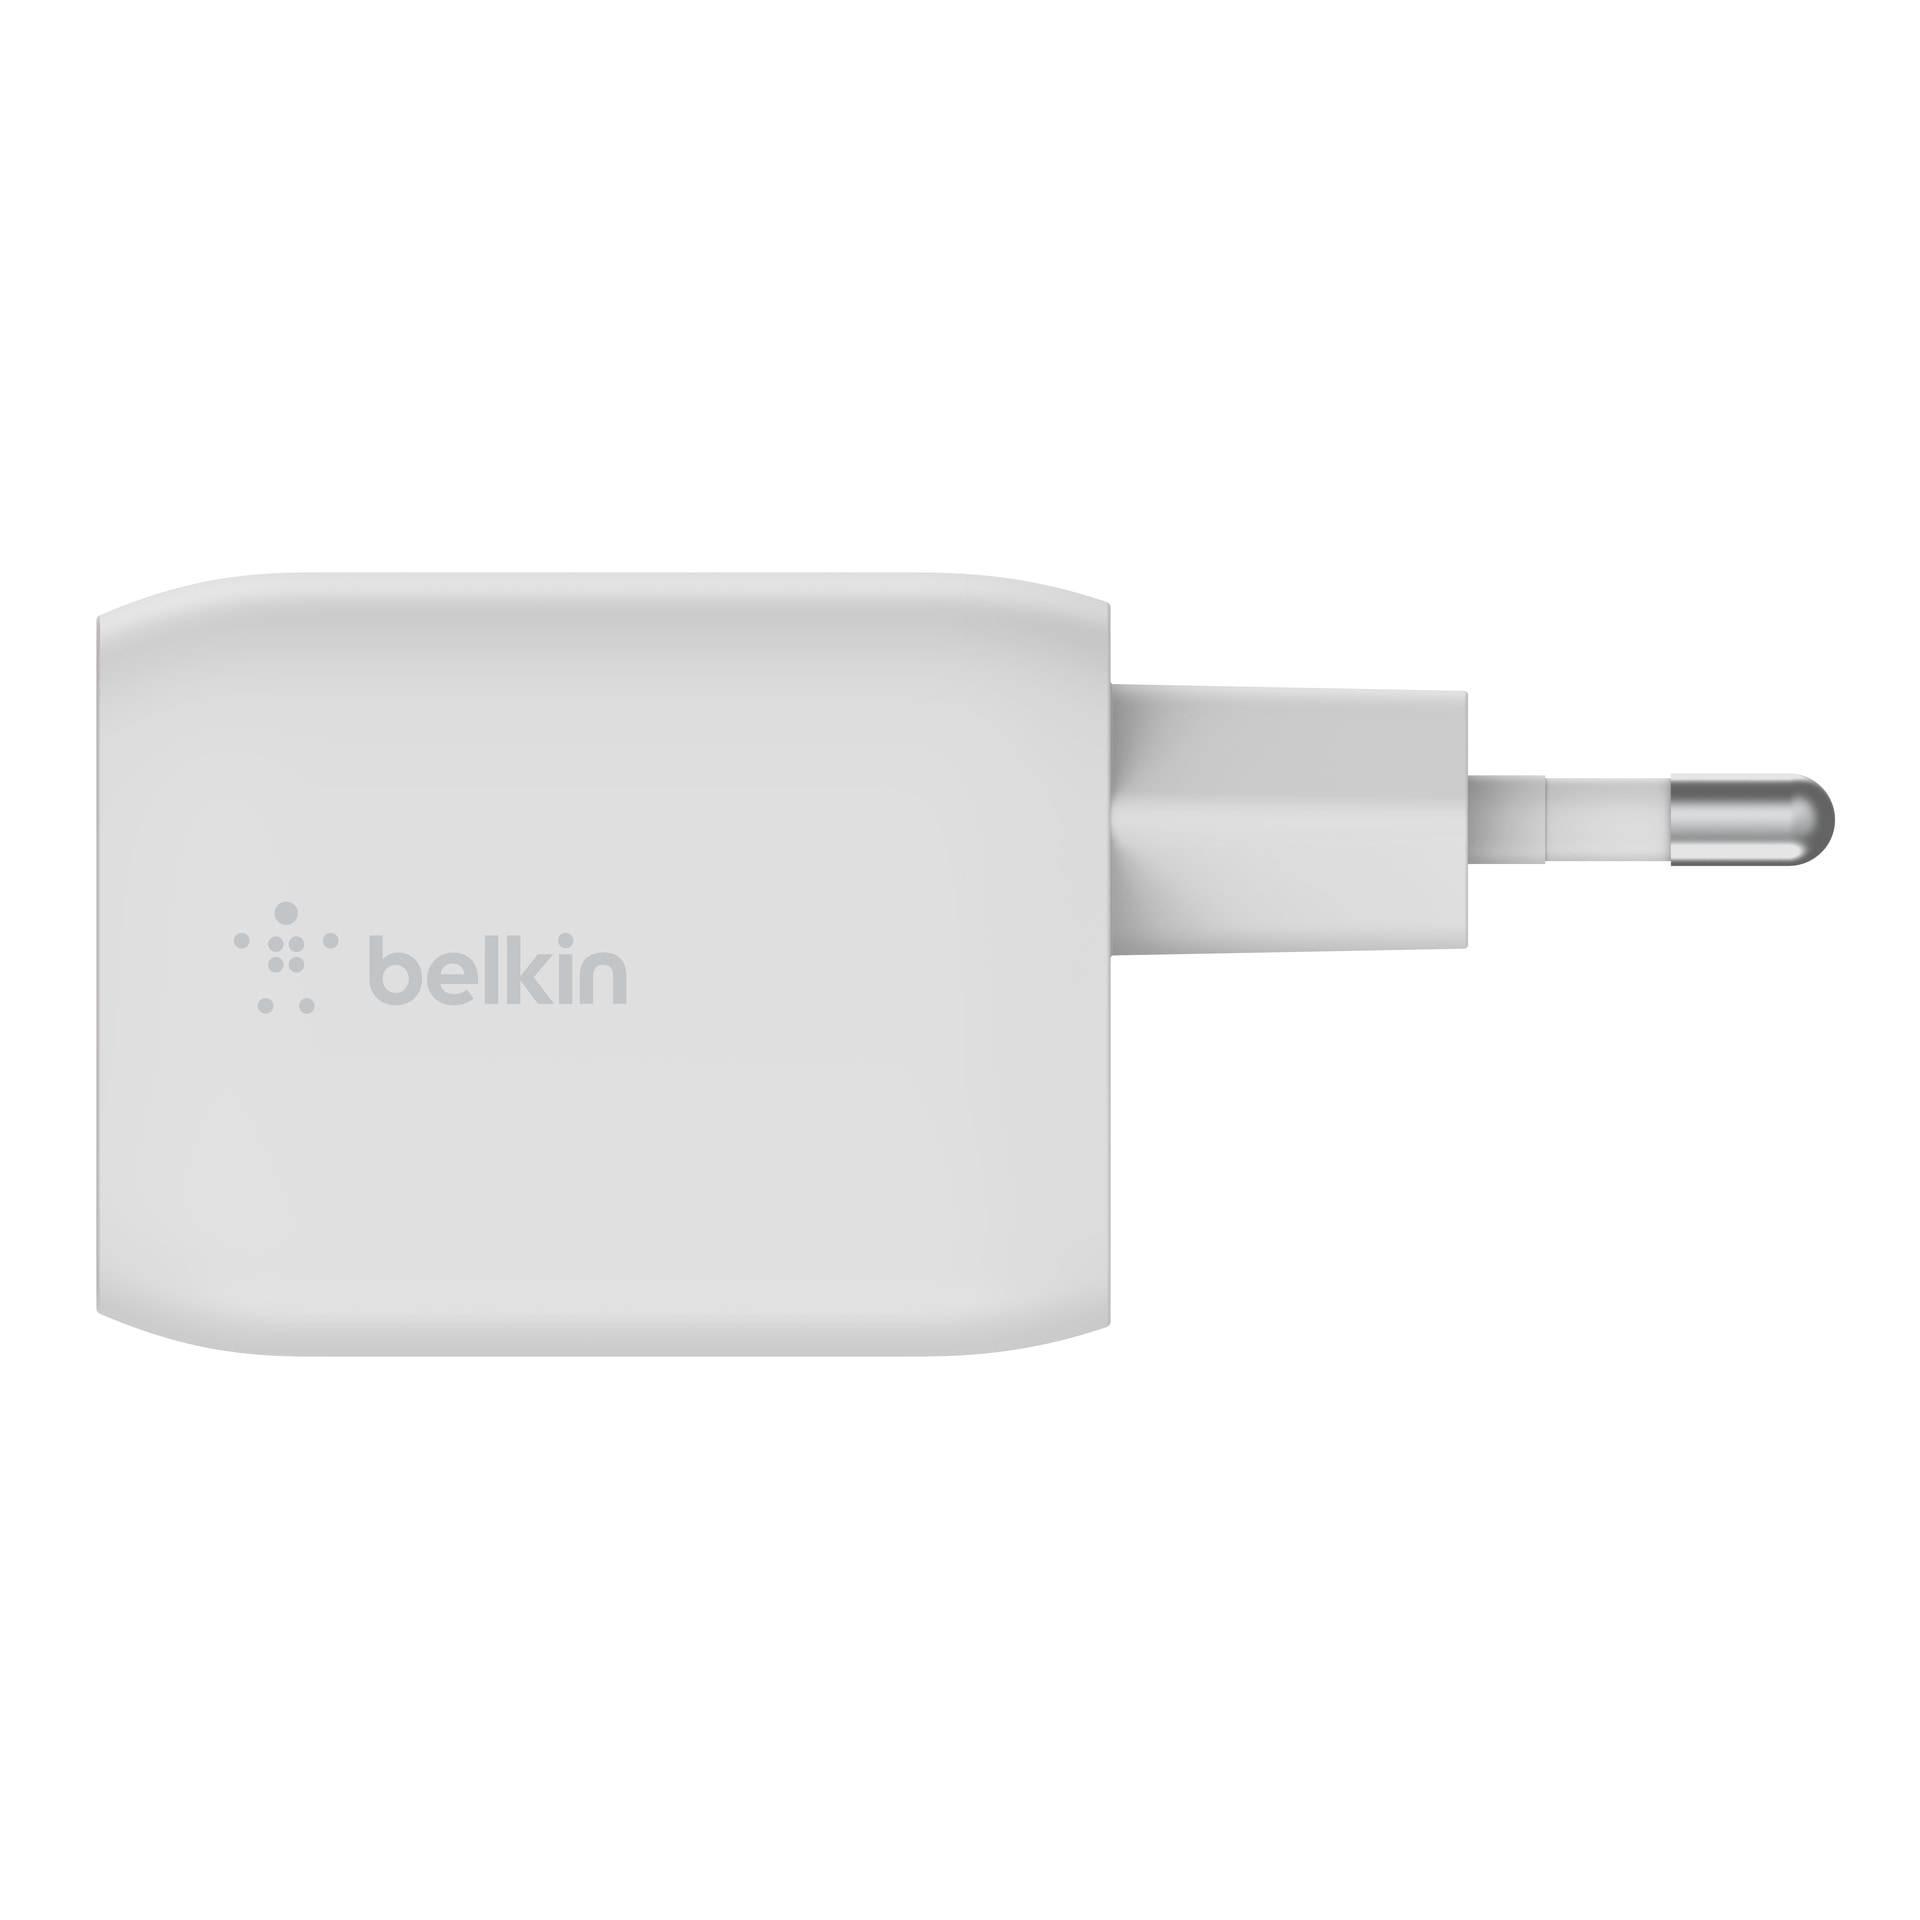 Belkin USB-Ladegerät »65W Dual USB-C GaN Ladegerät mit Power Deliver und PPS«, für Apple iPhone Samsung Galaxy Google Pixel